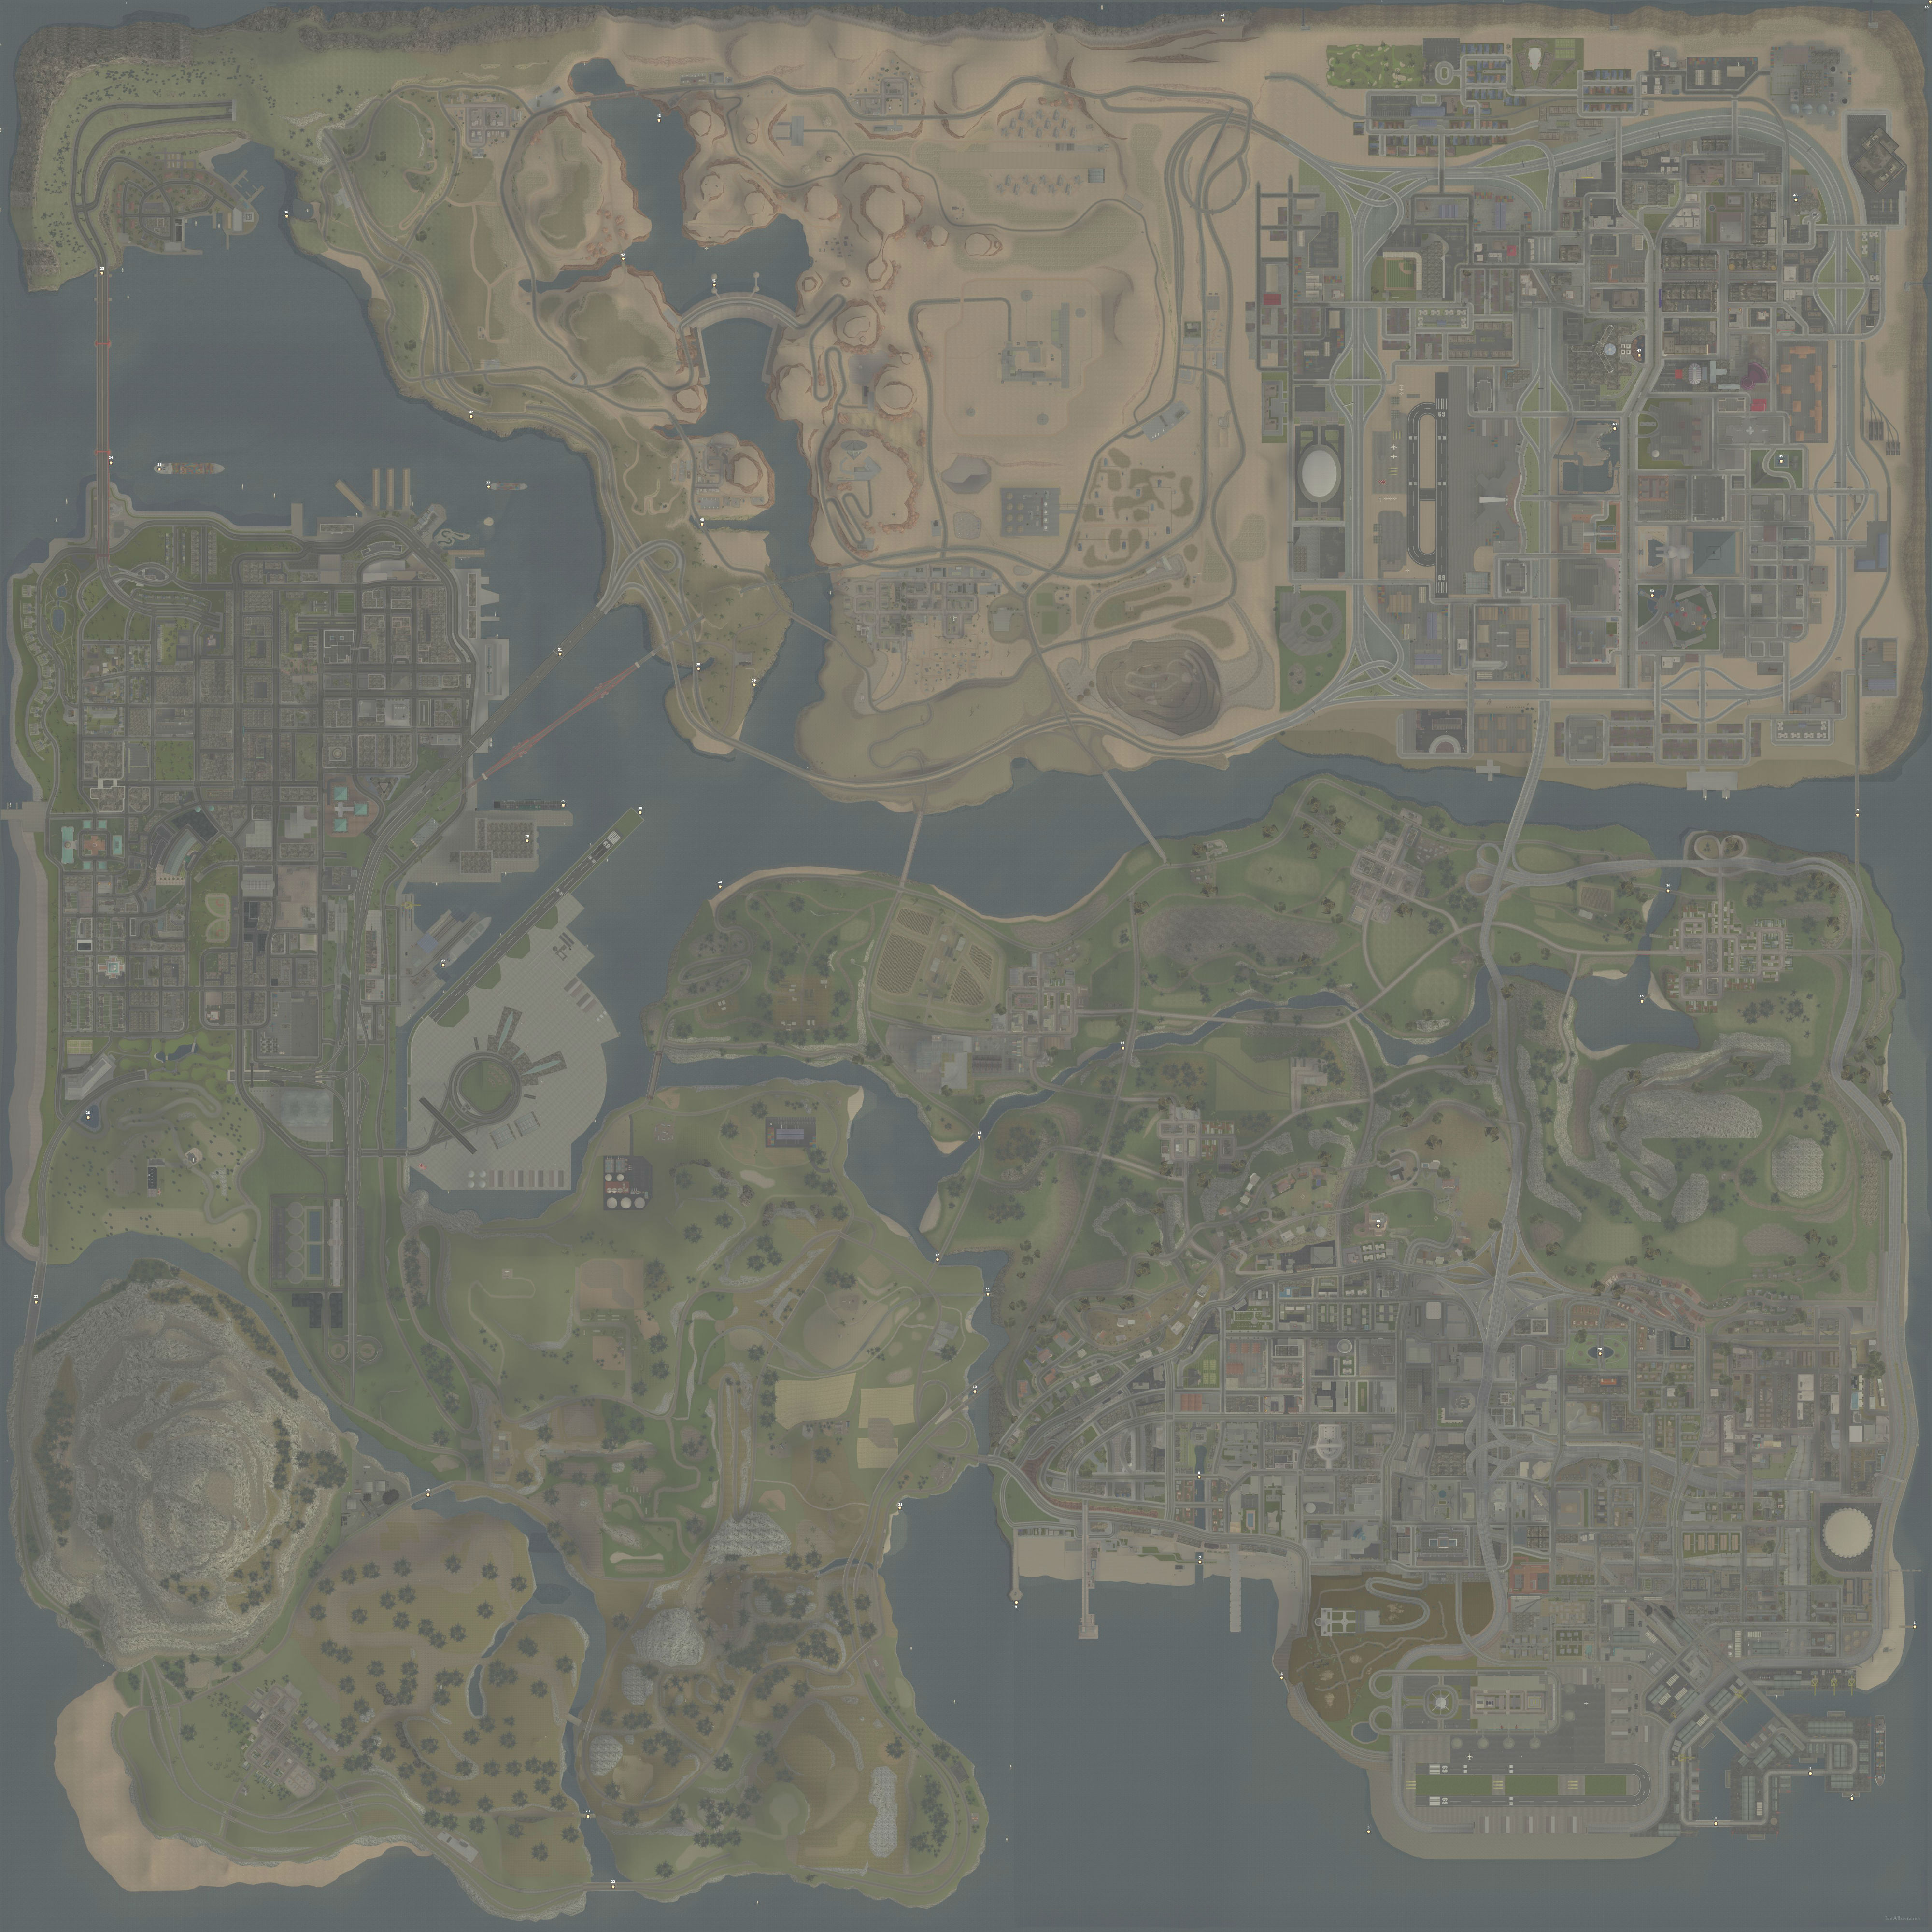 GTA San Andreas: Mapa e localização das 50 ostras colecionáveis do jogo -  Millenium